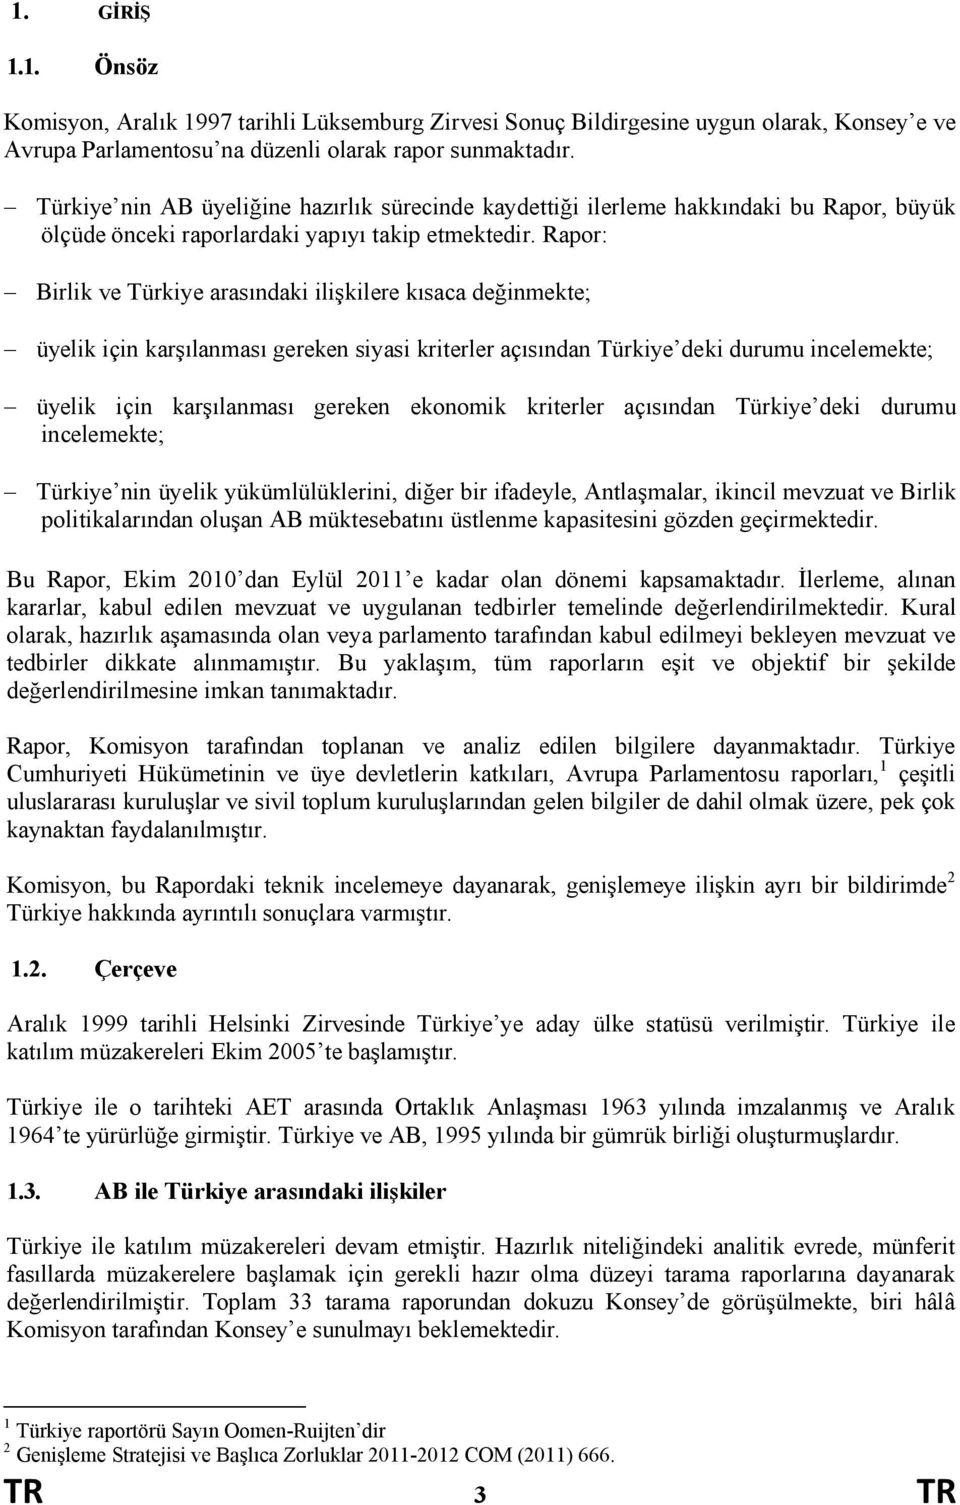 Rapor: - Birlik ve Türkiye arasındaki ilişkilere kısaca değinmekte; - üyelik için karşılanması gereken siyasi kriterler açısından Türkiye deki durumu incelemekte; - üyelik için karşılanması gereken